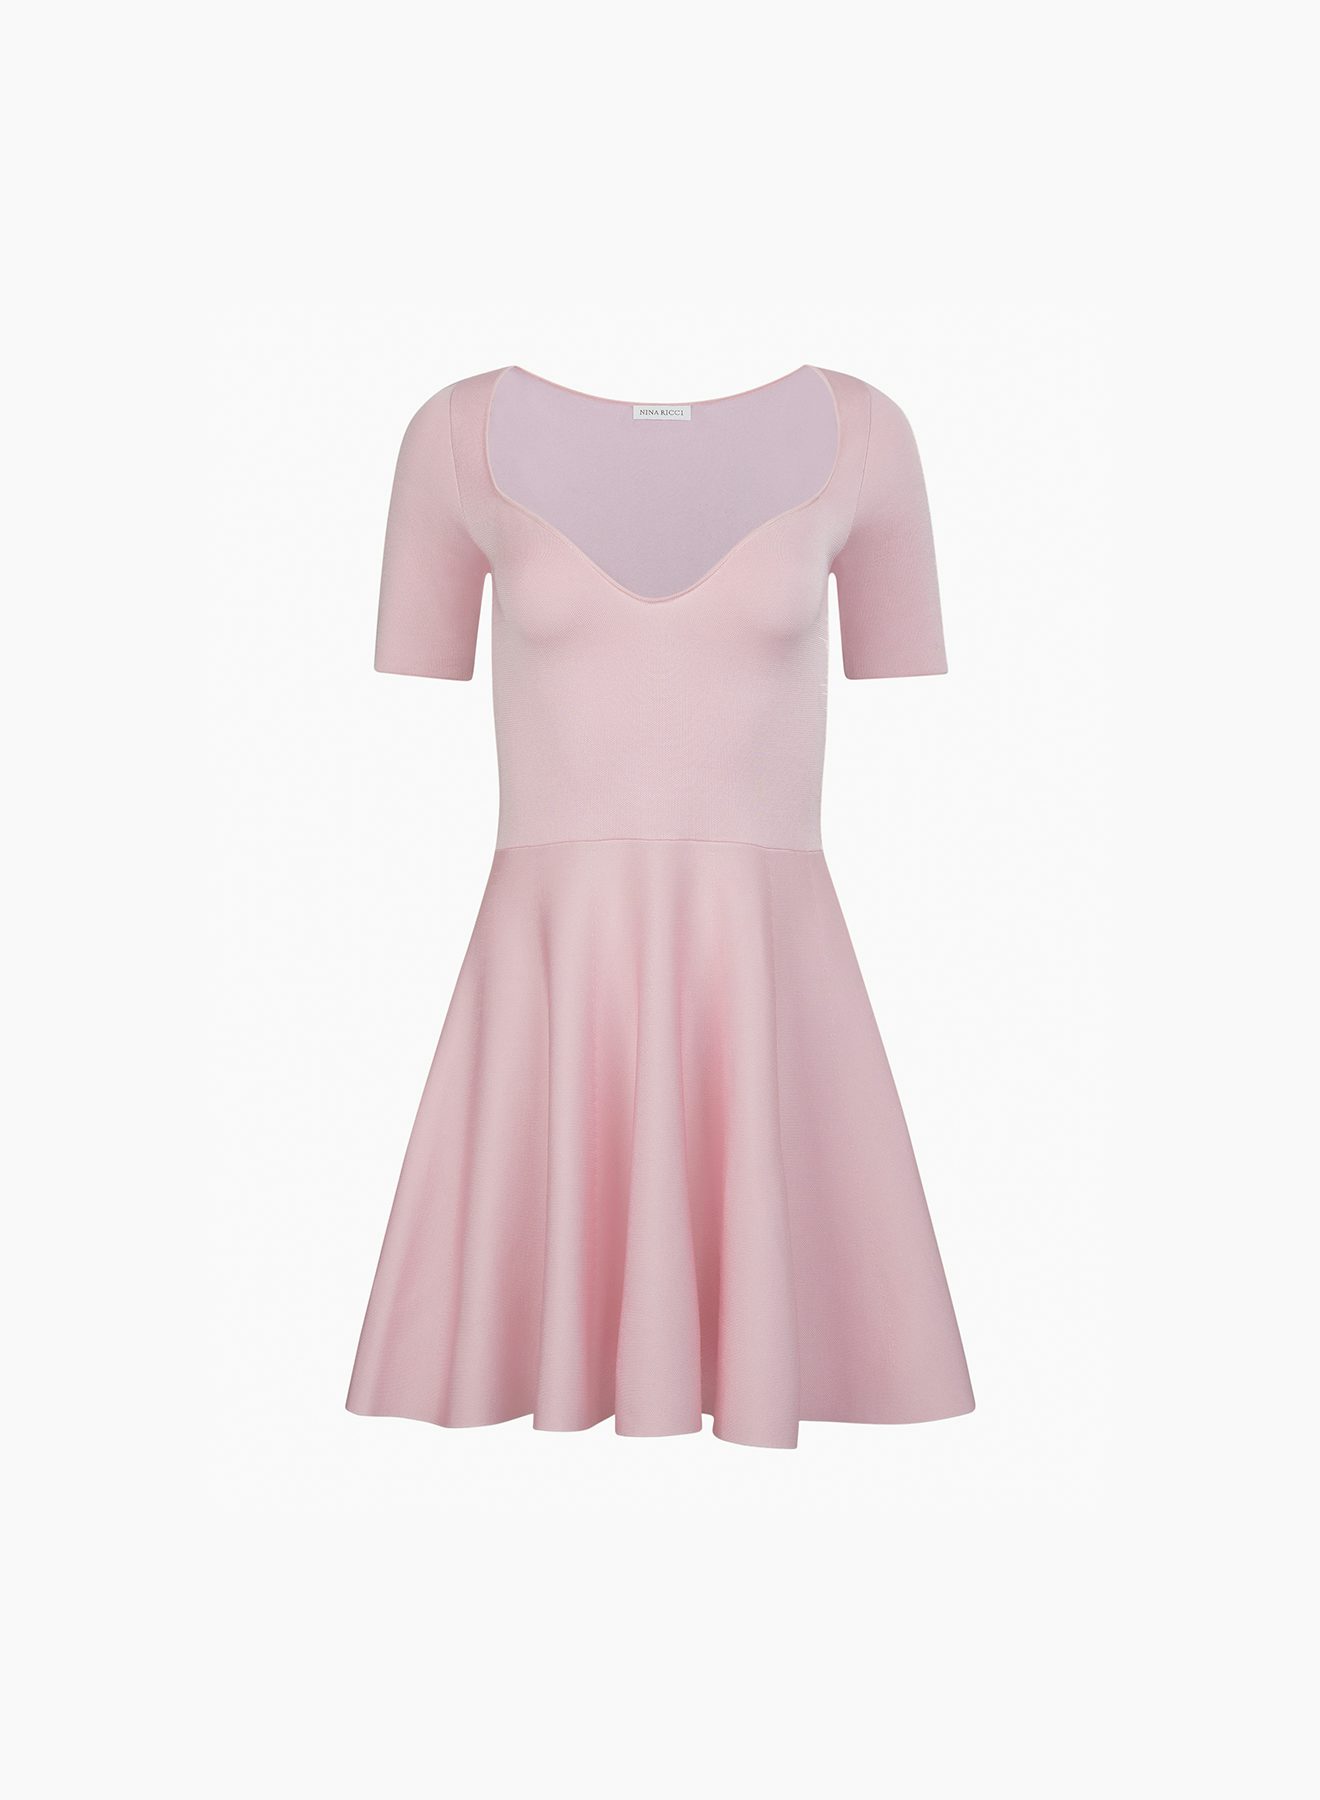 Heart neckline flared dress in pink - Nina Ricci